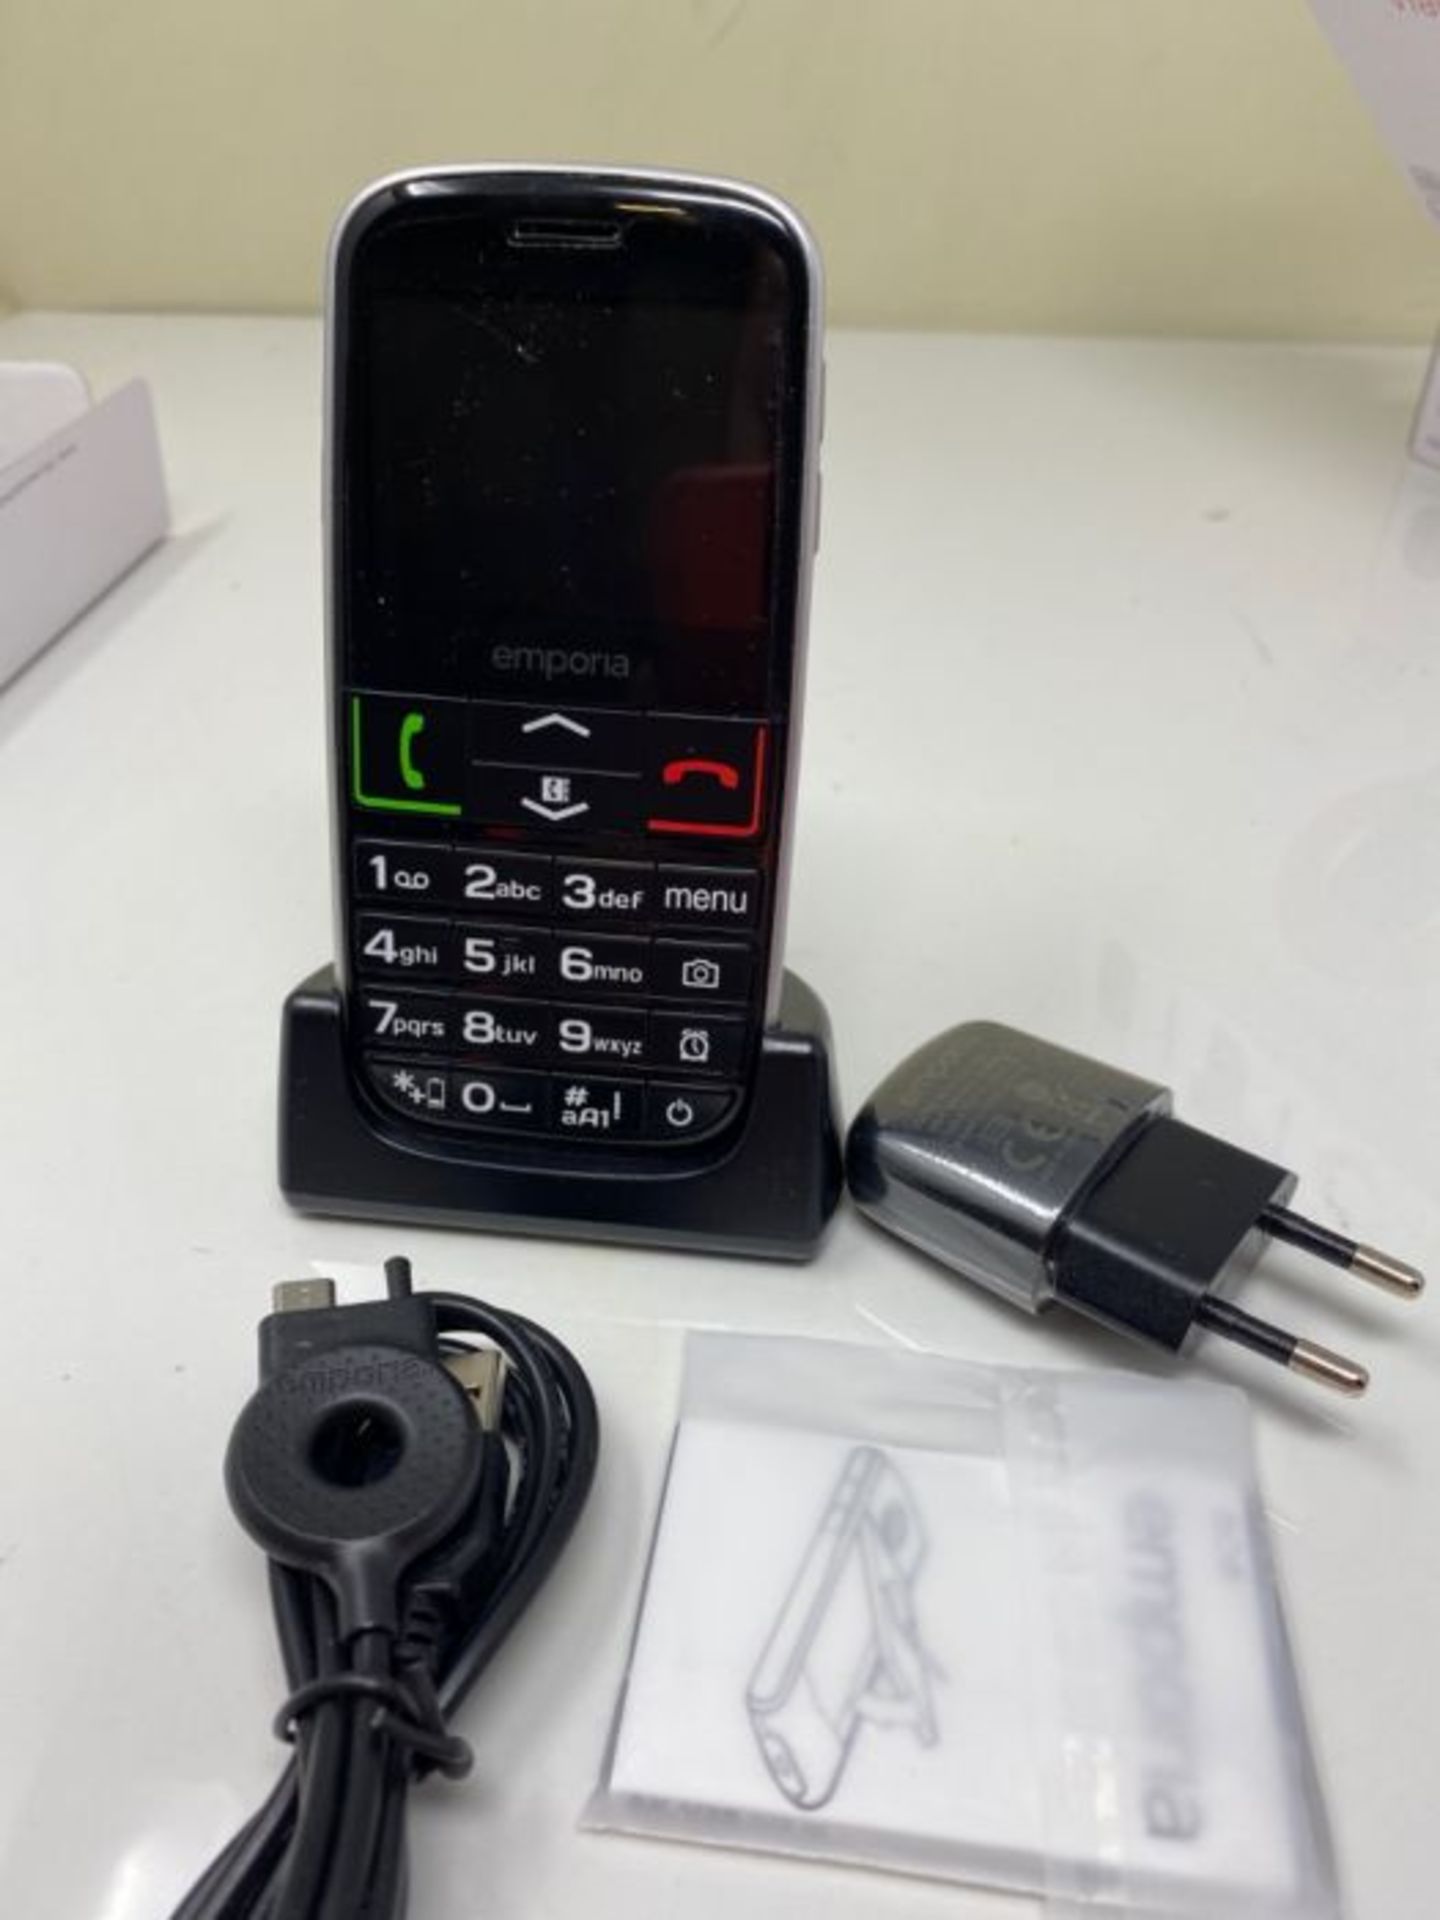 RRP £52.00 Emporia EUPHORIA 2.3" 90g Black, Silver - mobile phones (Single SIM, MiniSIM, Alarm cl - Image 3 of 3